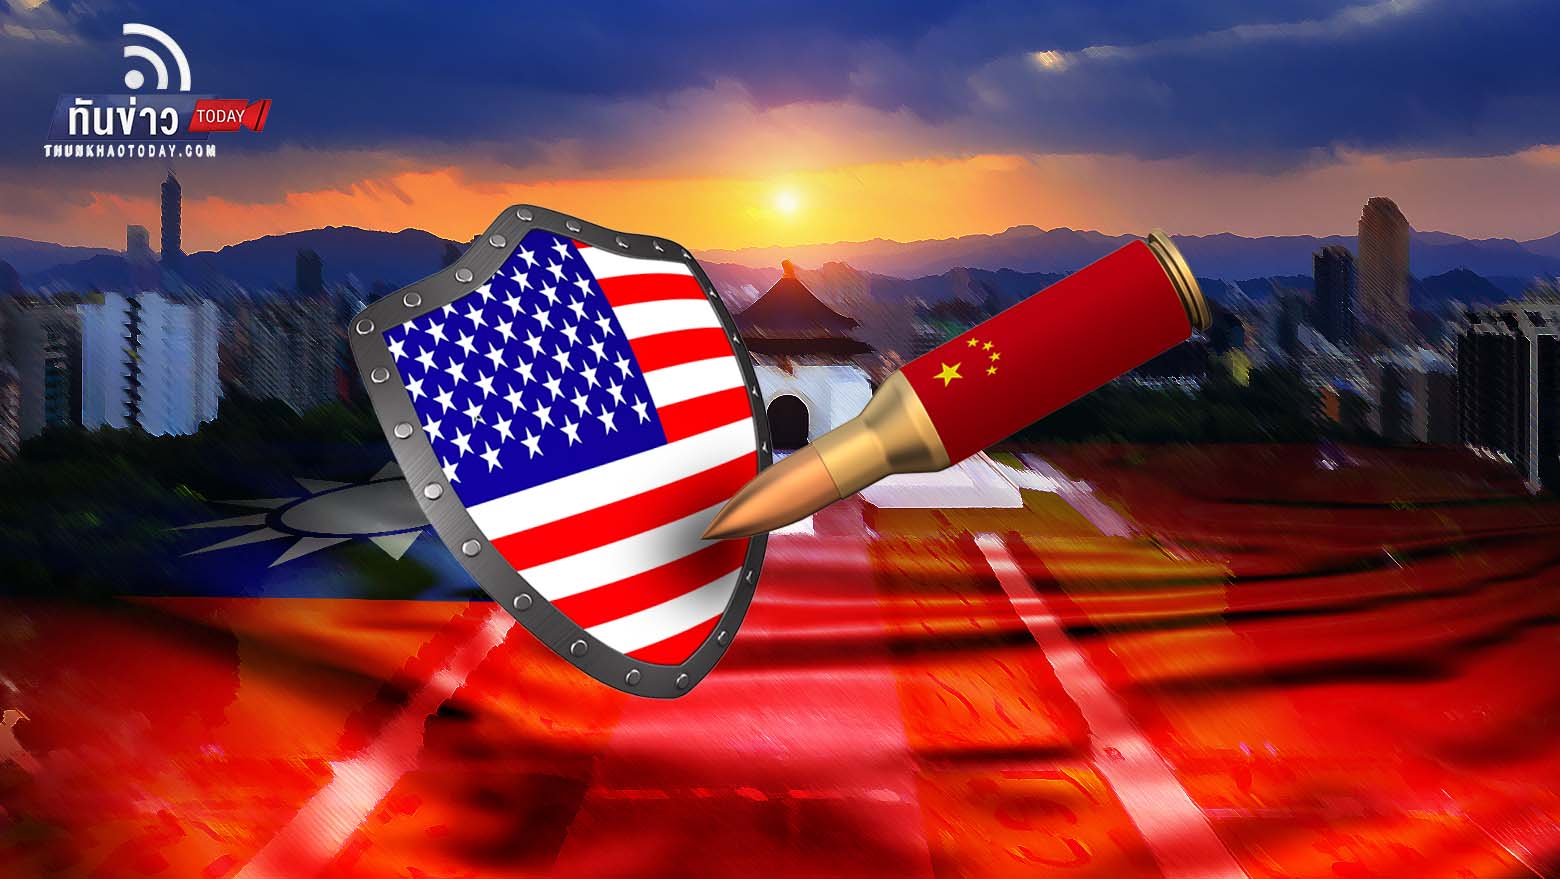 สหรัฐฯ ขู่อาจใช้มาตรการคว่ำบาตรจีนหากรุกรานไต้หวัน เหมือนกับที่รัสเซียรุกรานยูเครน